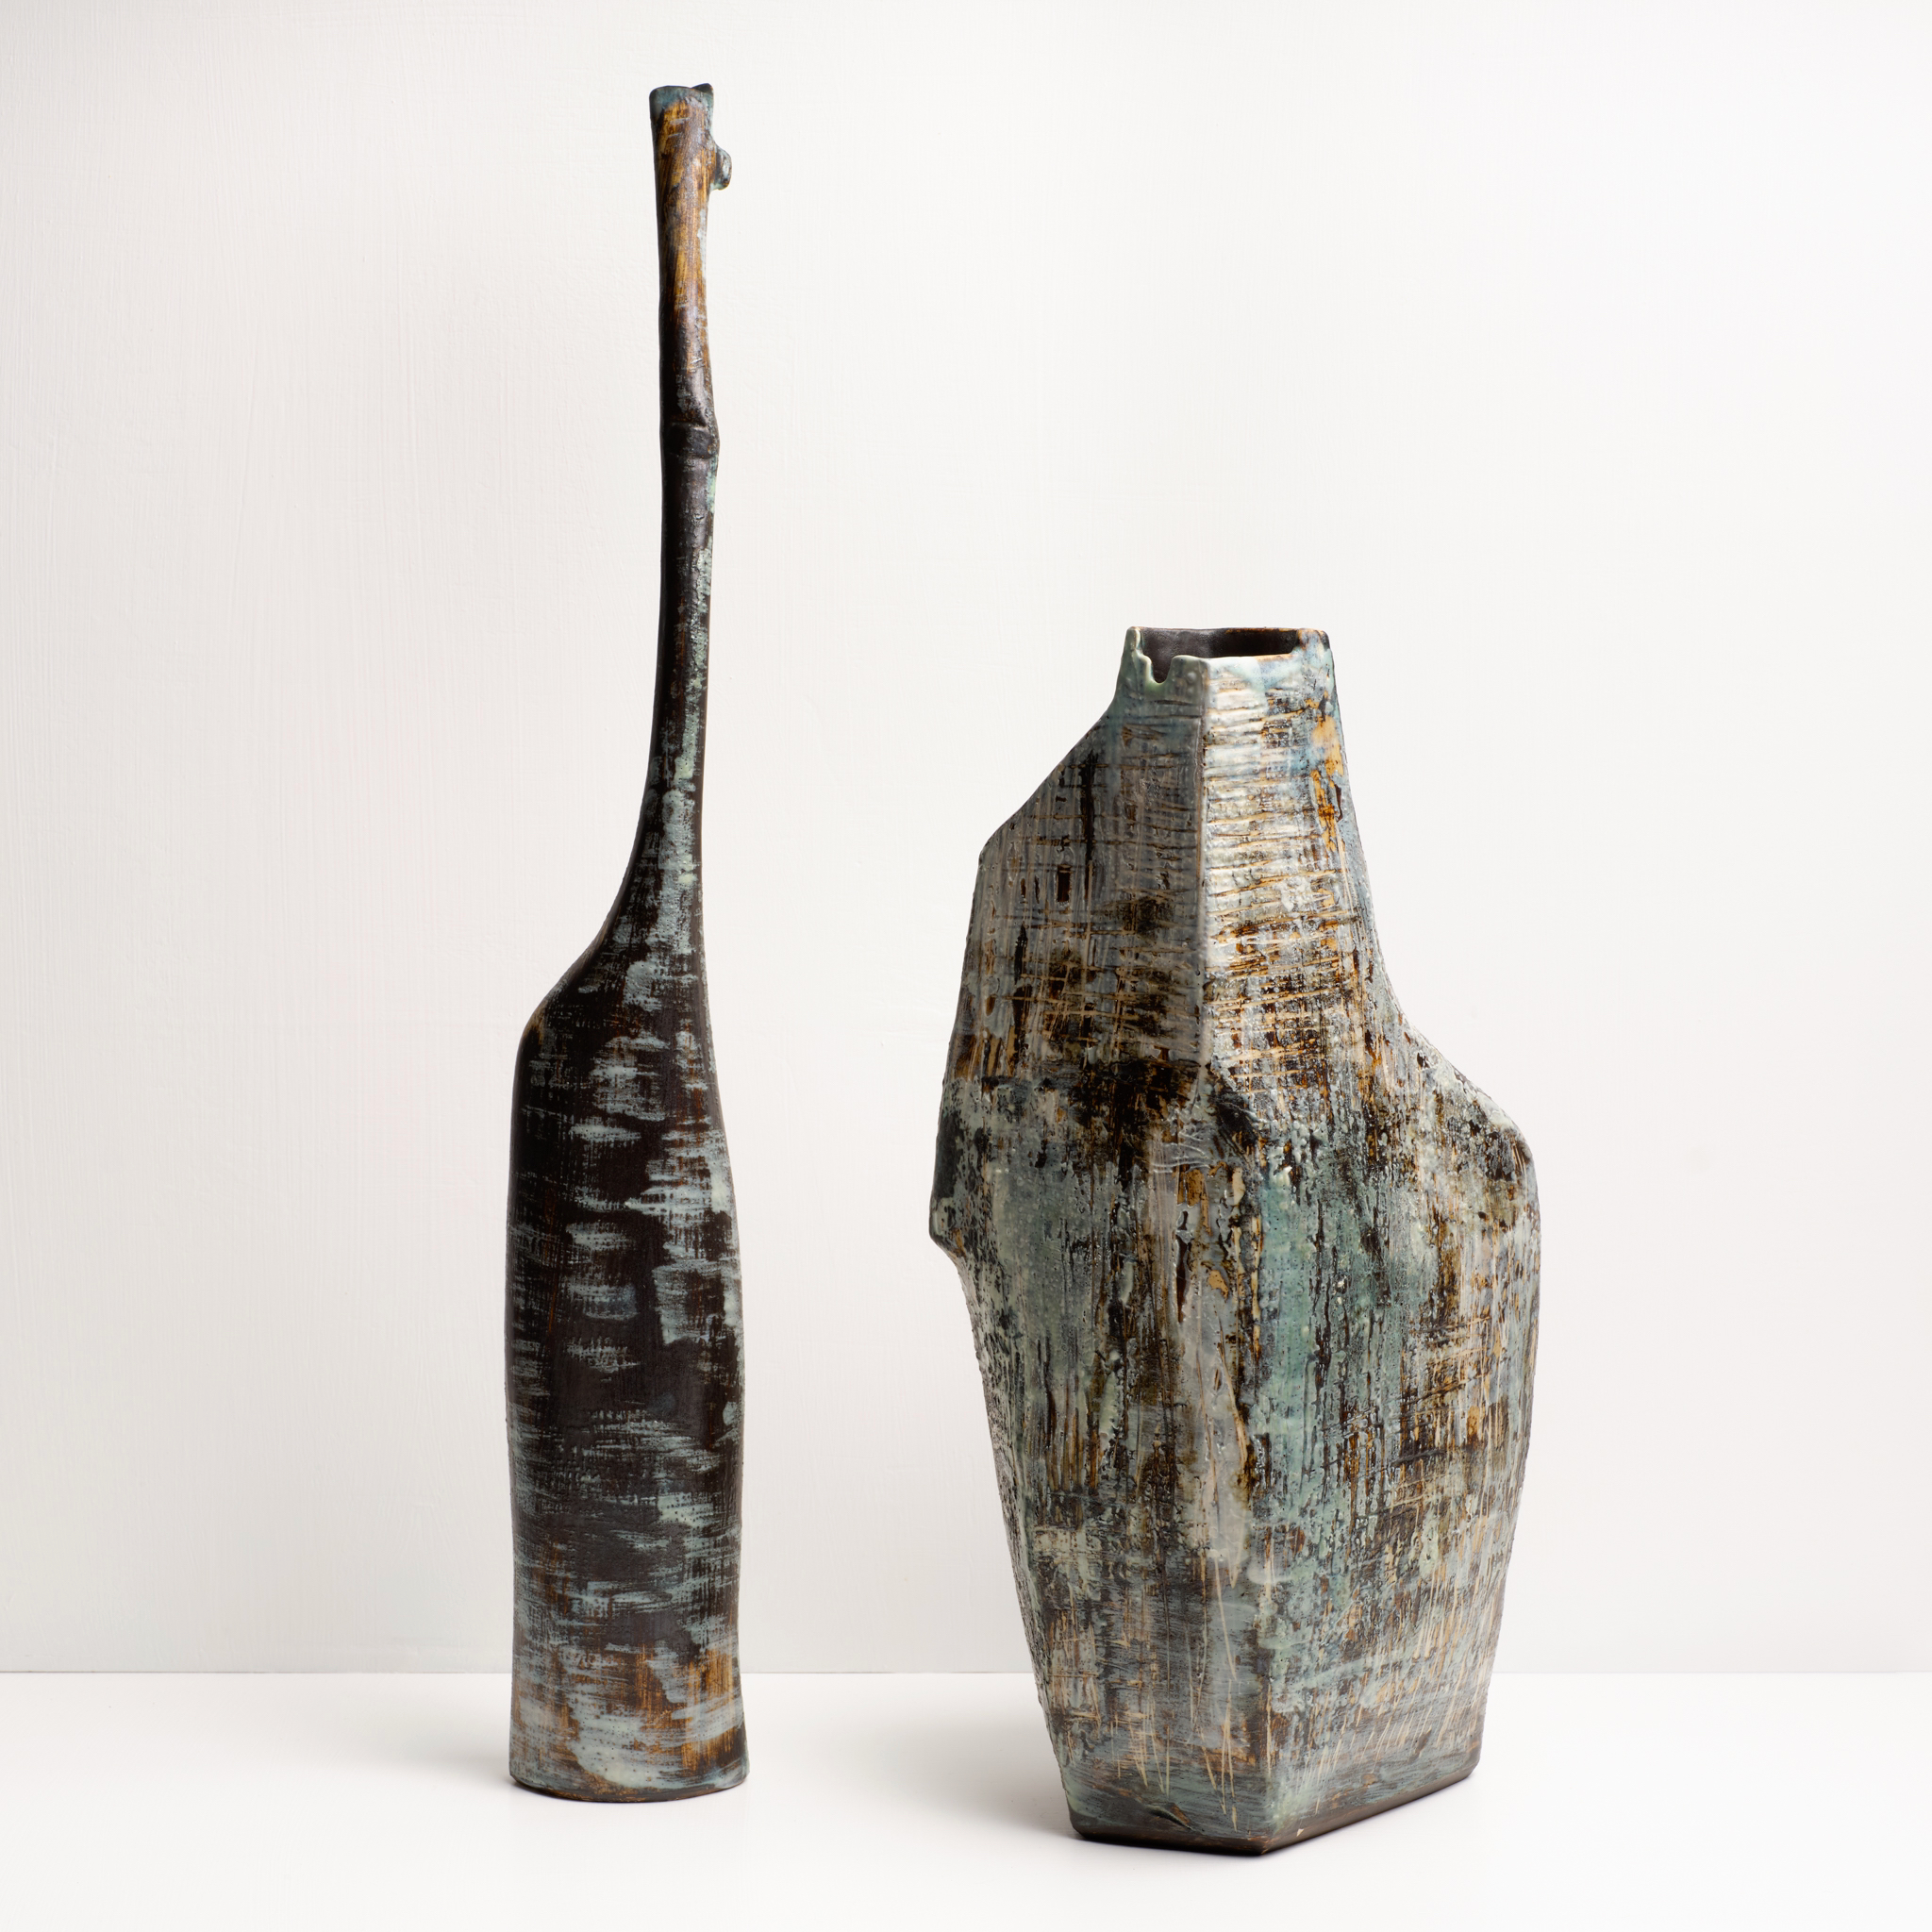 Sue Mundy Ceramics - Foundation Series no 22 with Lignum